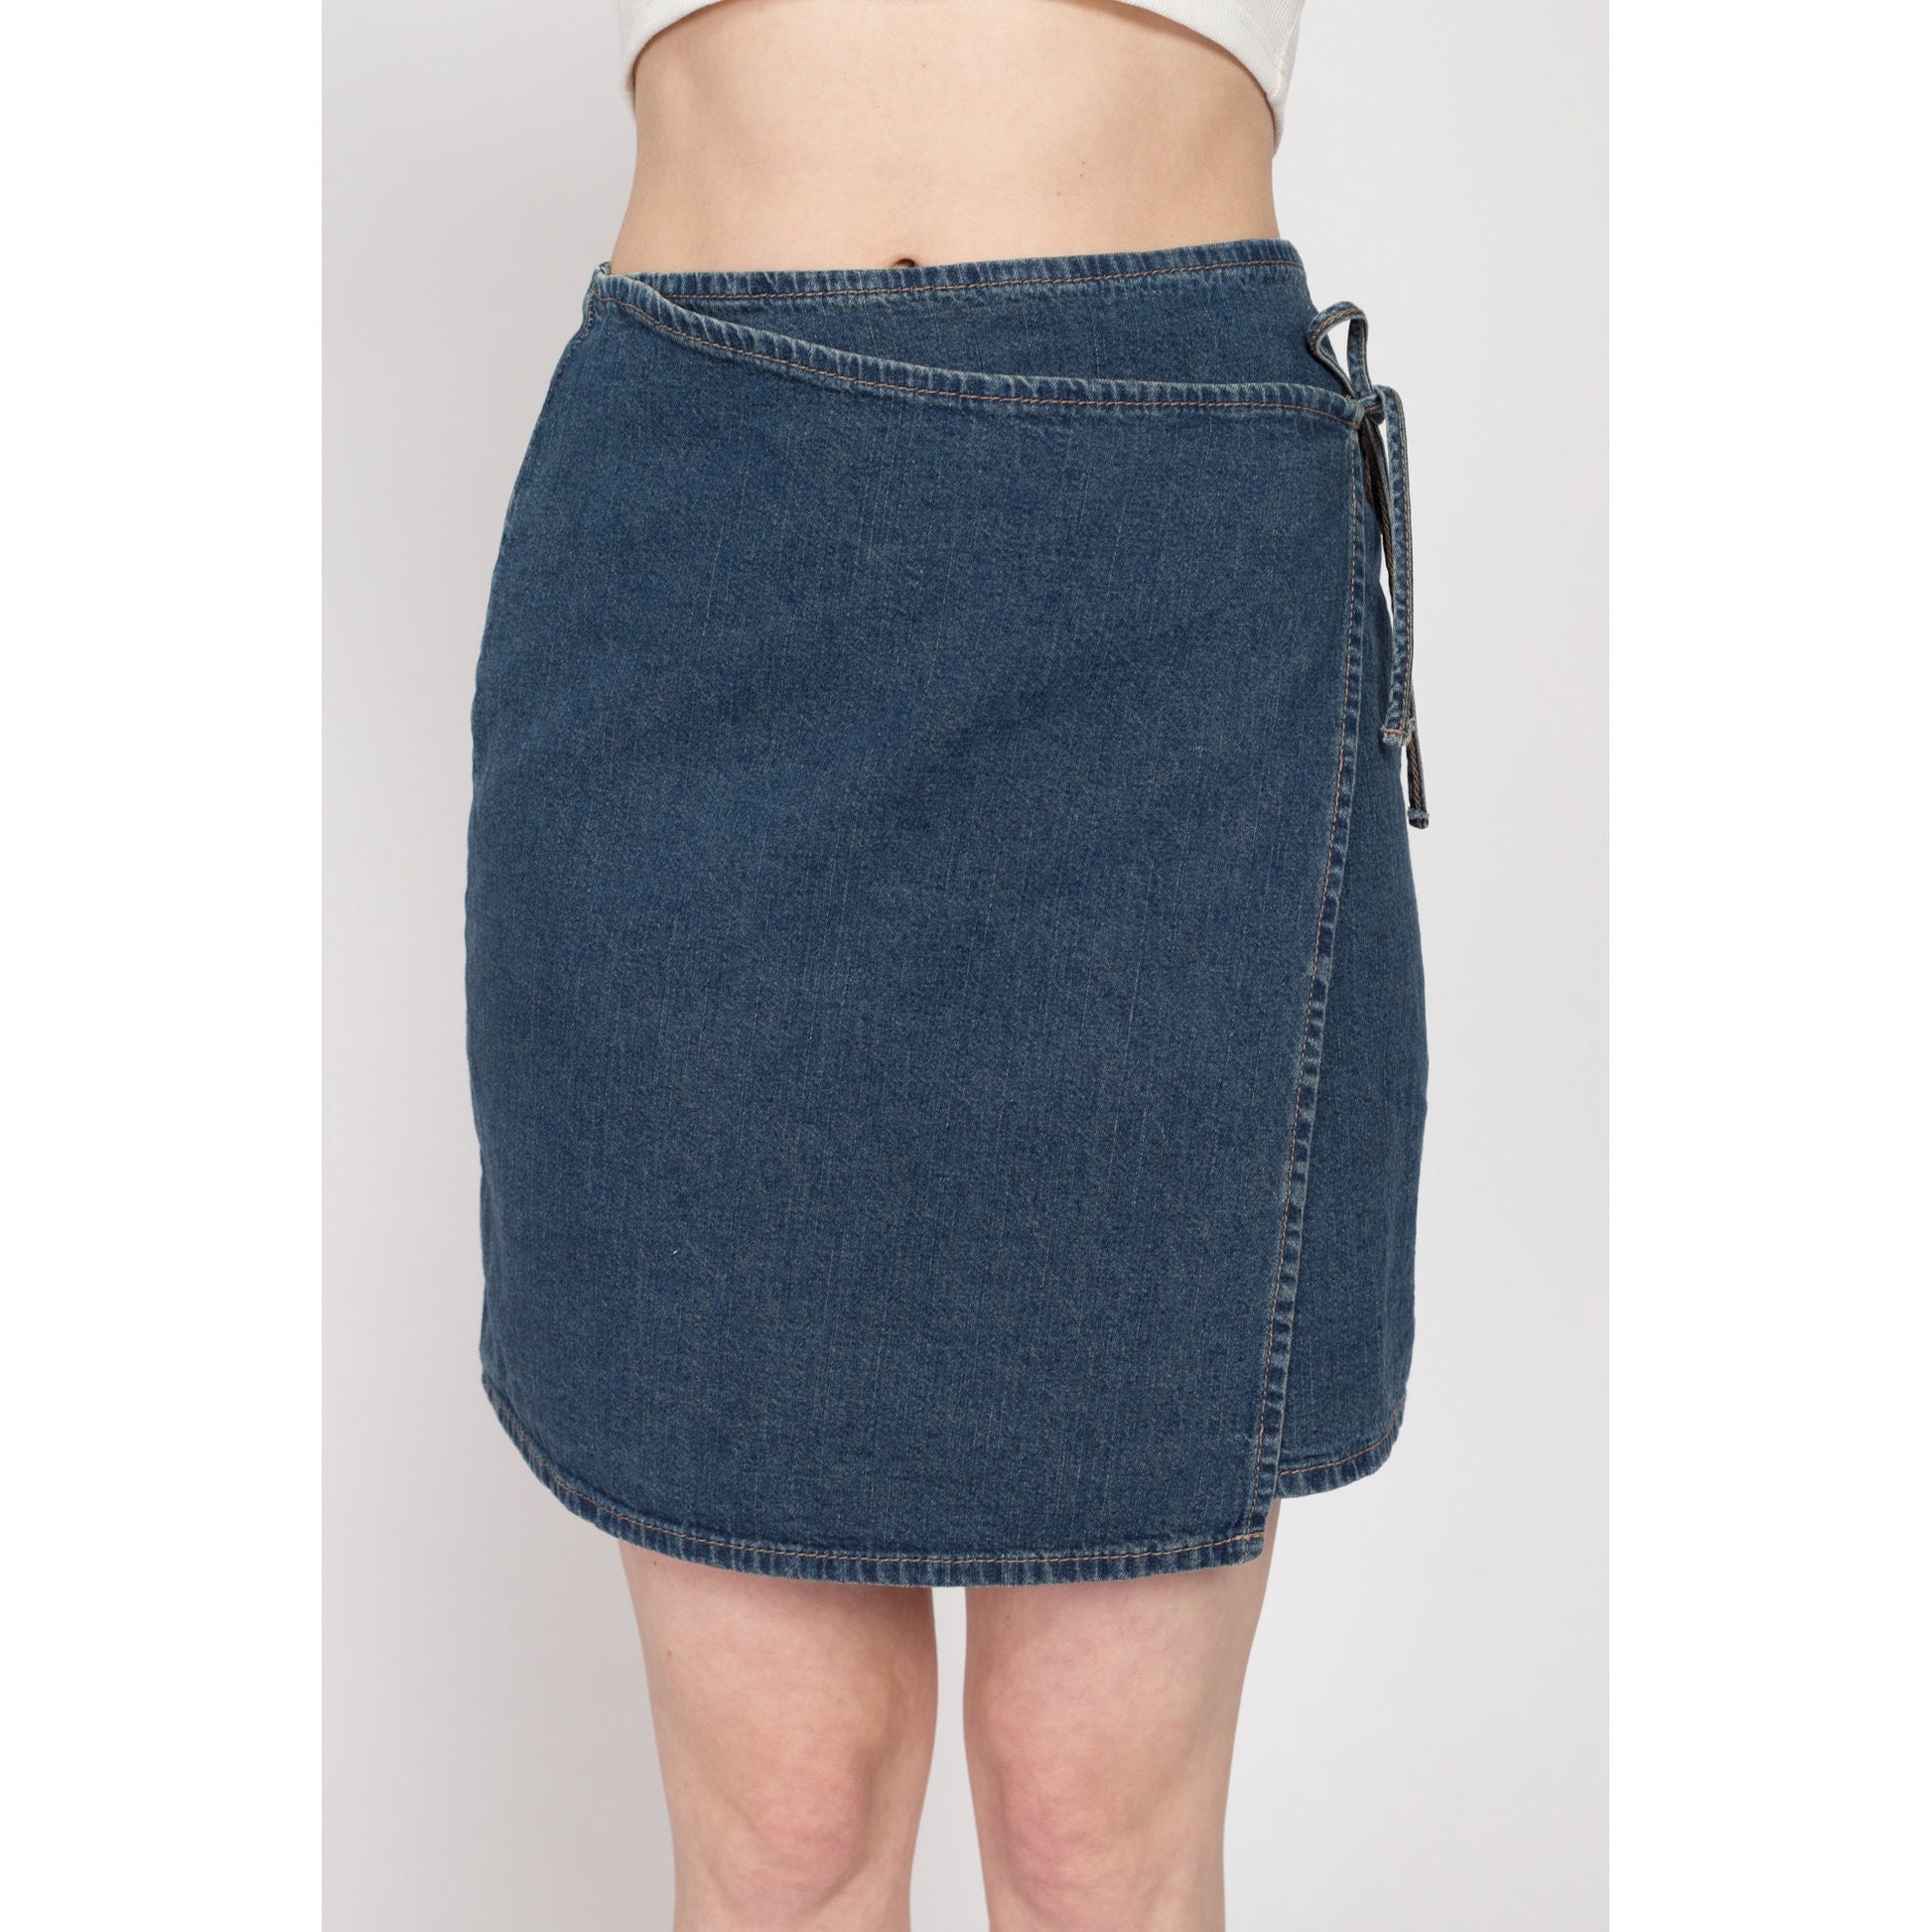 XS 90s Denim Low Rise Wrap Mini Skirt | Vintage Blue Jean A Line Minimalist Miniskirt